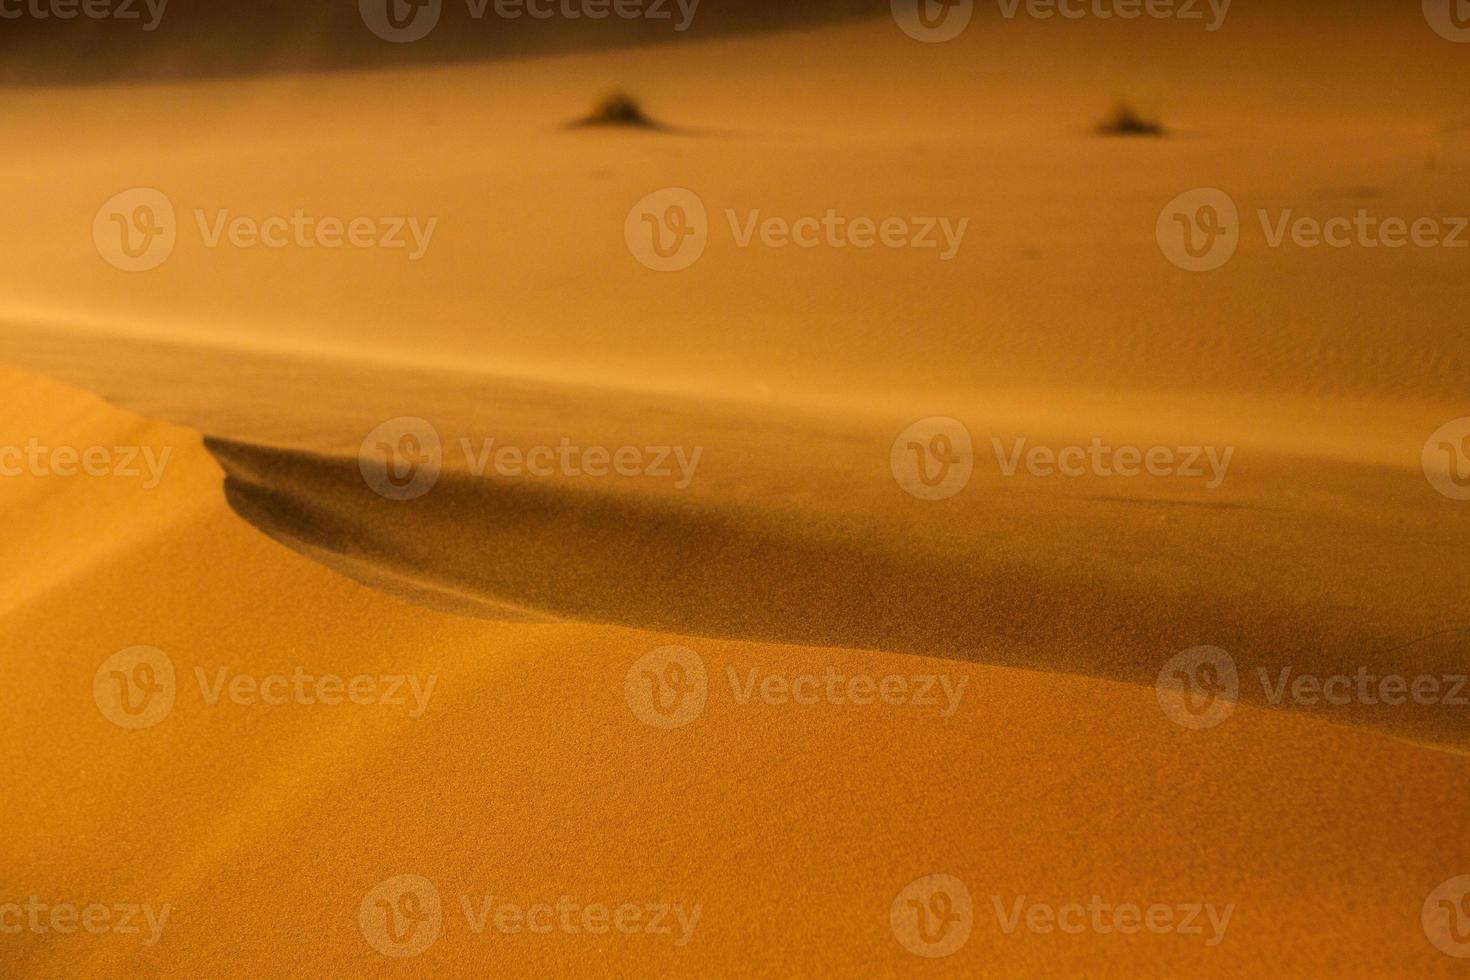 prachtige zandduinen in de saharawoestijn in marokko. landschap in Afrika in de woestijn. foto